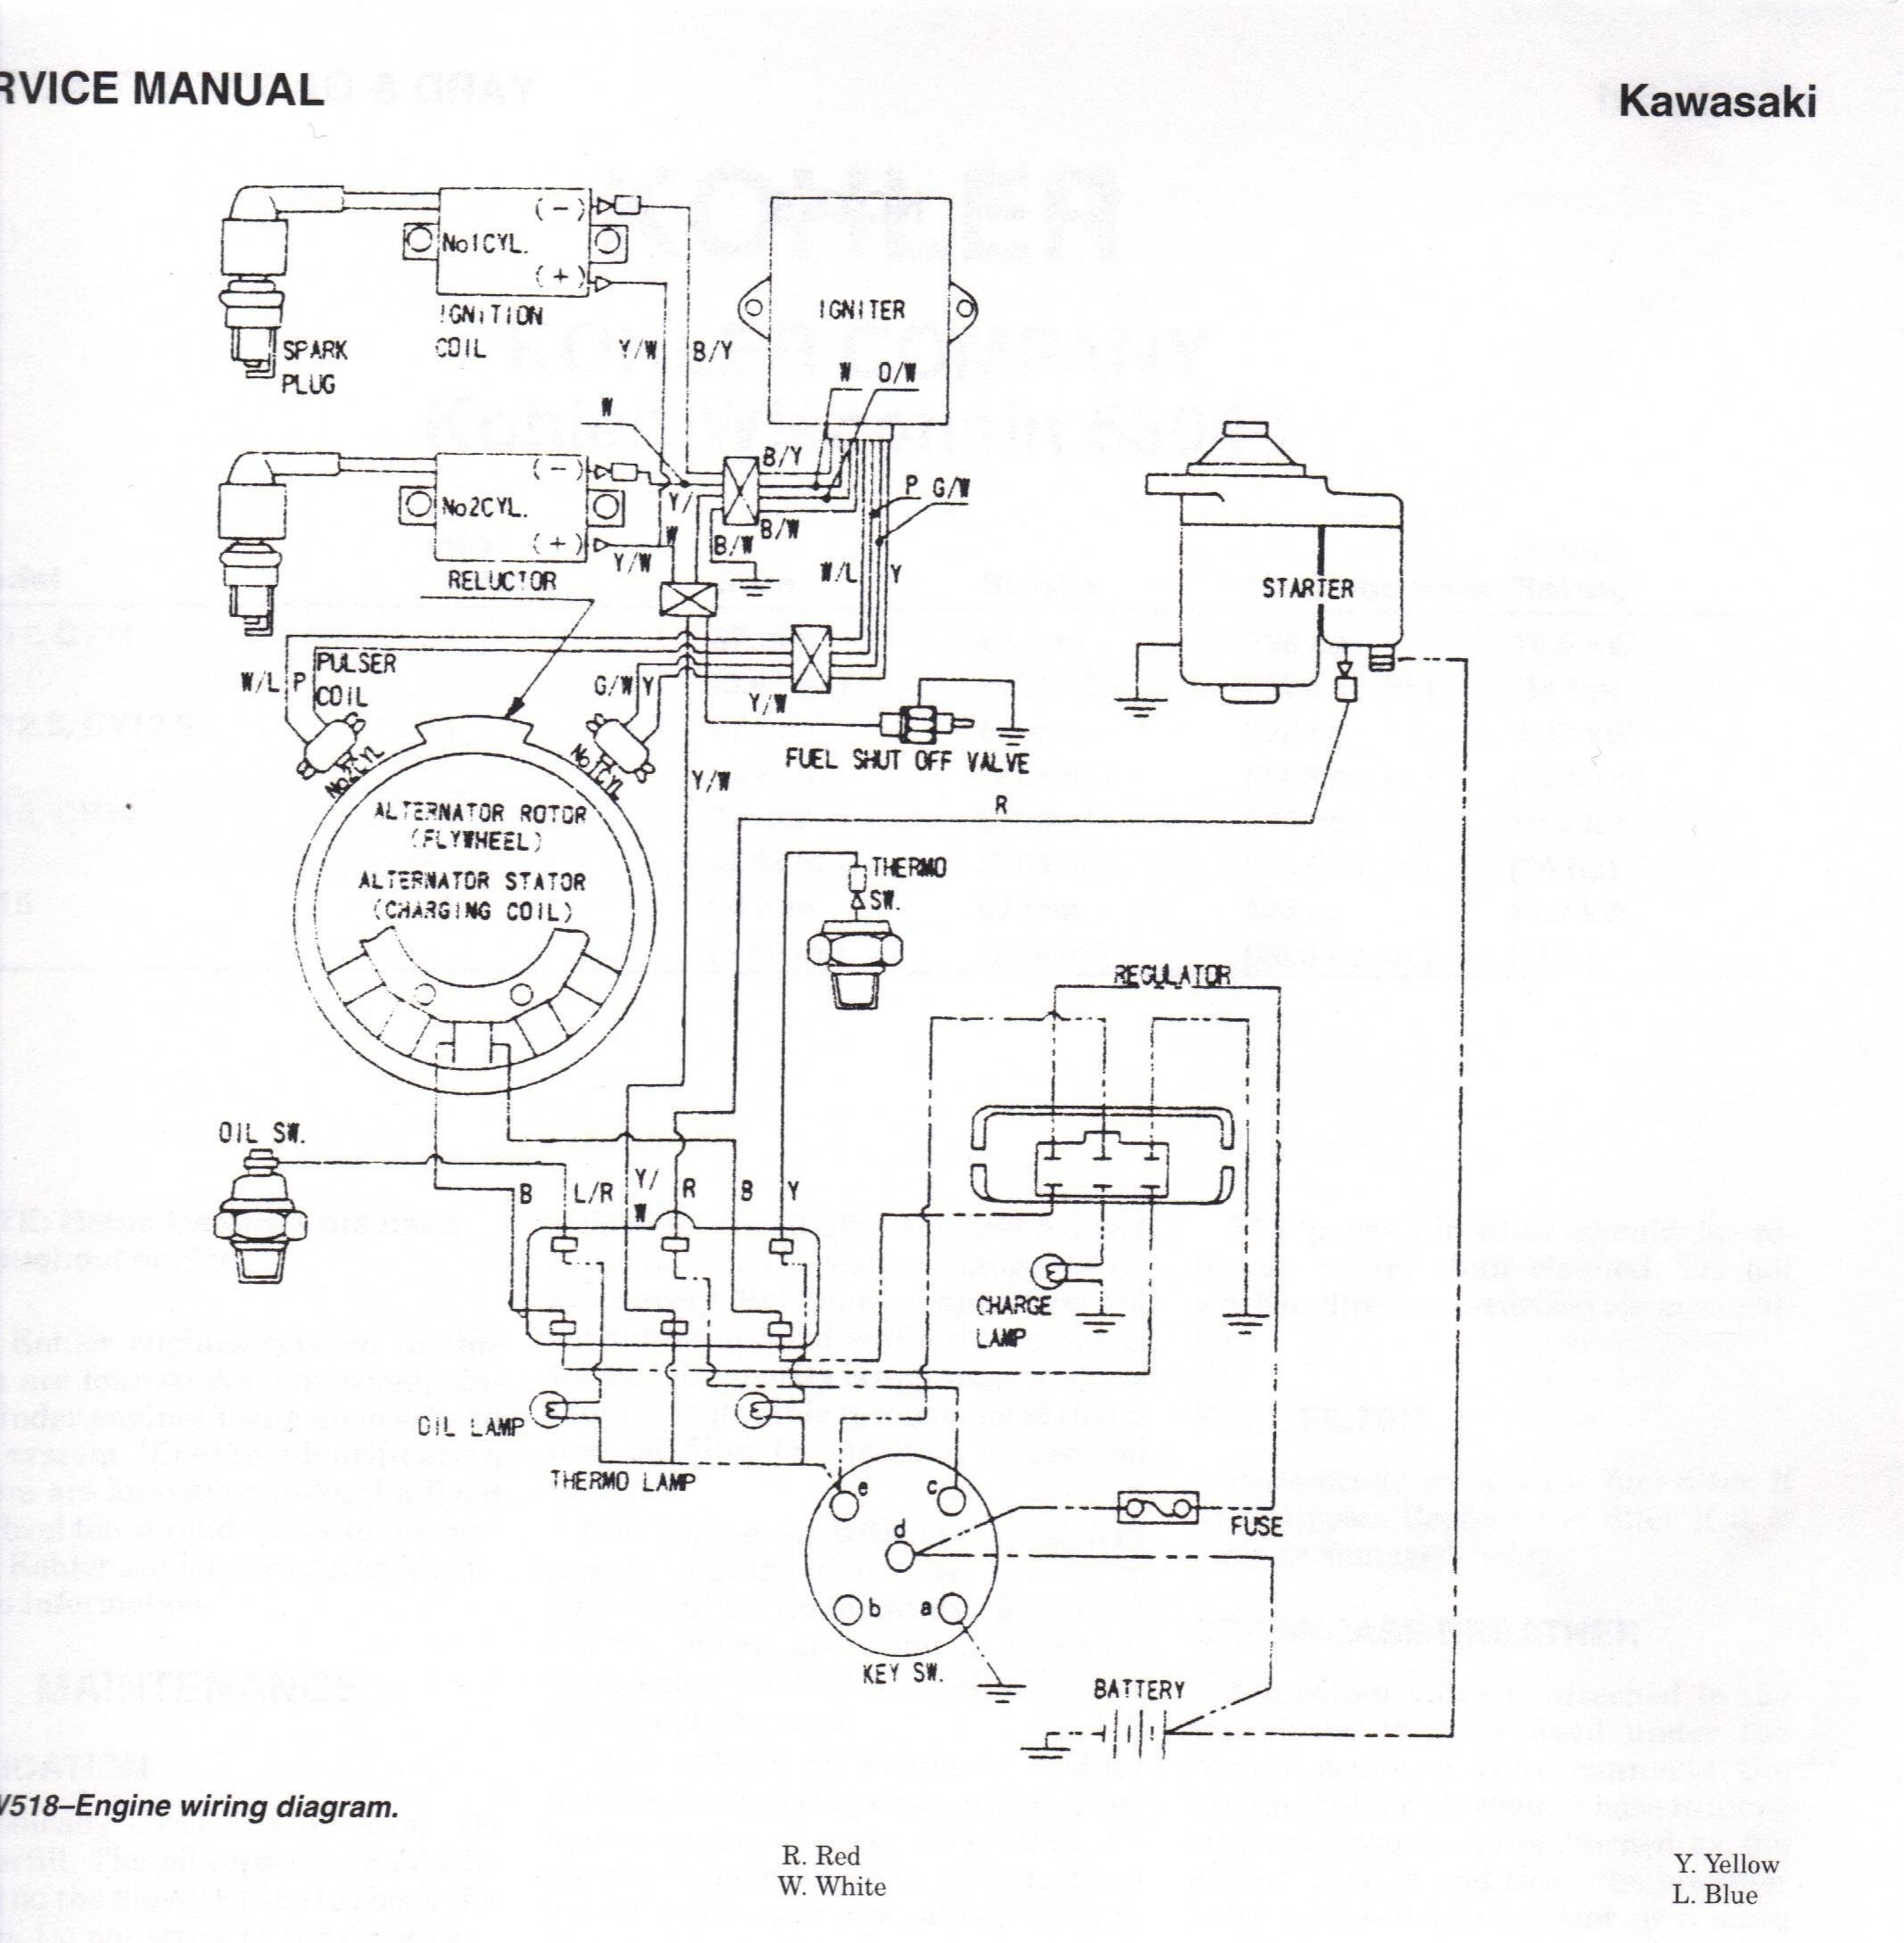 John Deere Gator Ignition Diagram Ct 9164] Gator Xuv 620i Wiring Diagram